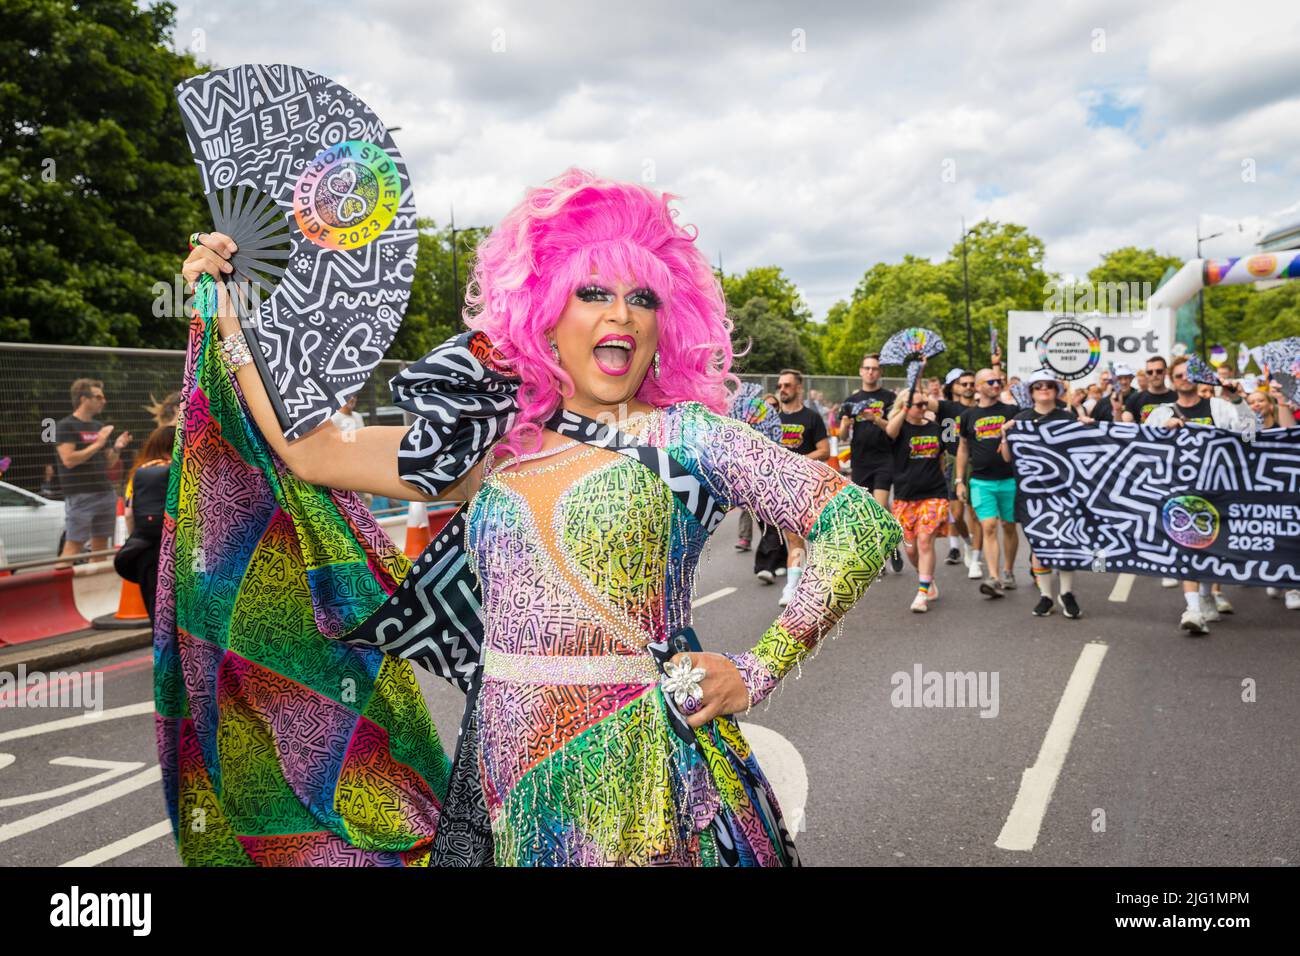 Reina australiana de la delegación World Pride Sydney 2023 Foto de stock